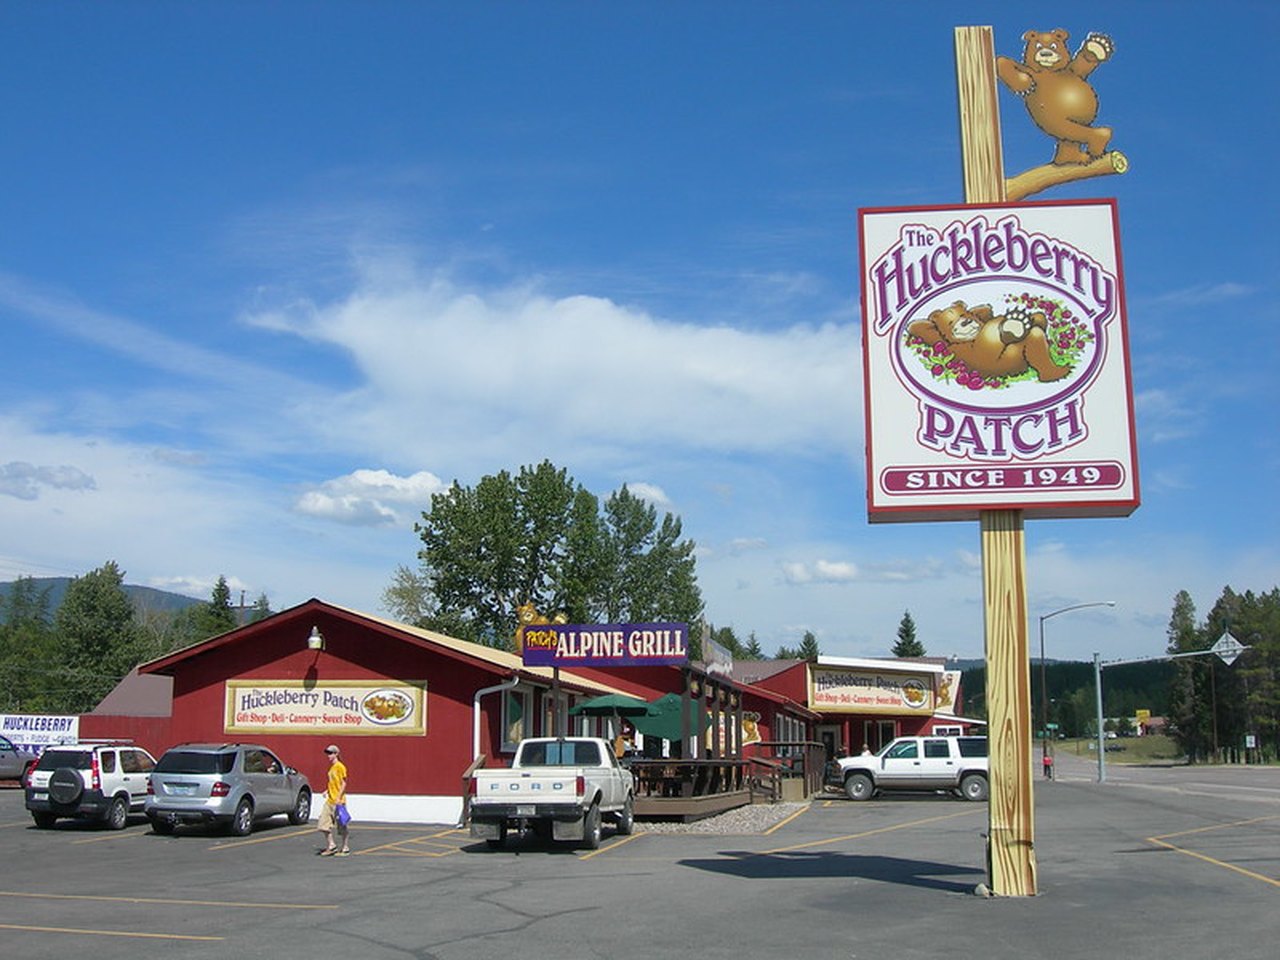 Huckleberry Shops Montana: In der Nähe von Little Switzerland